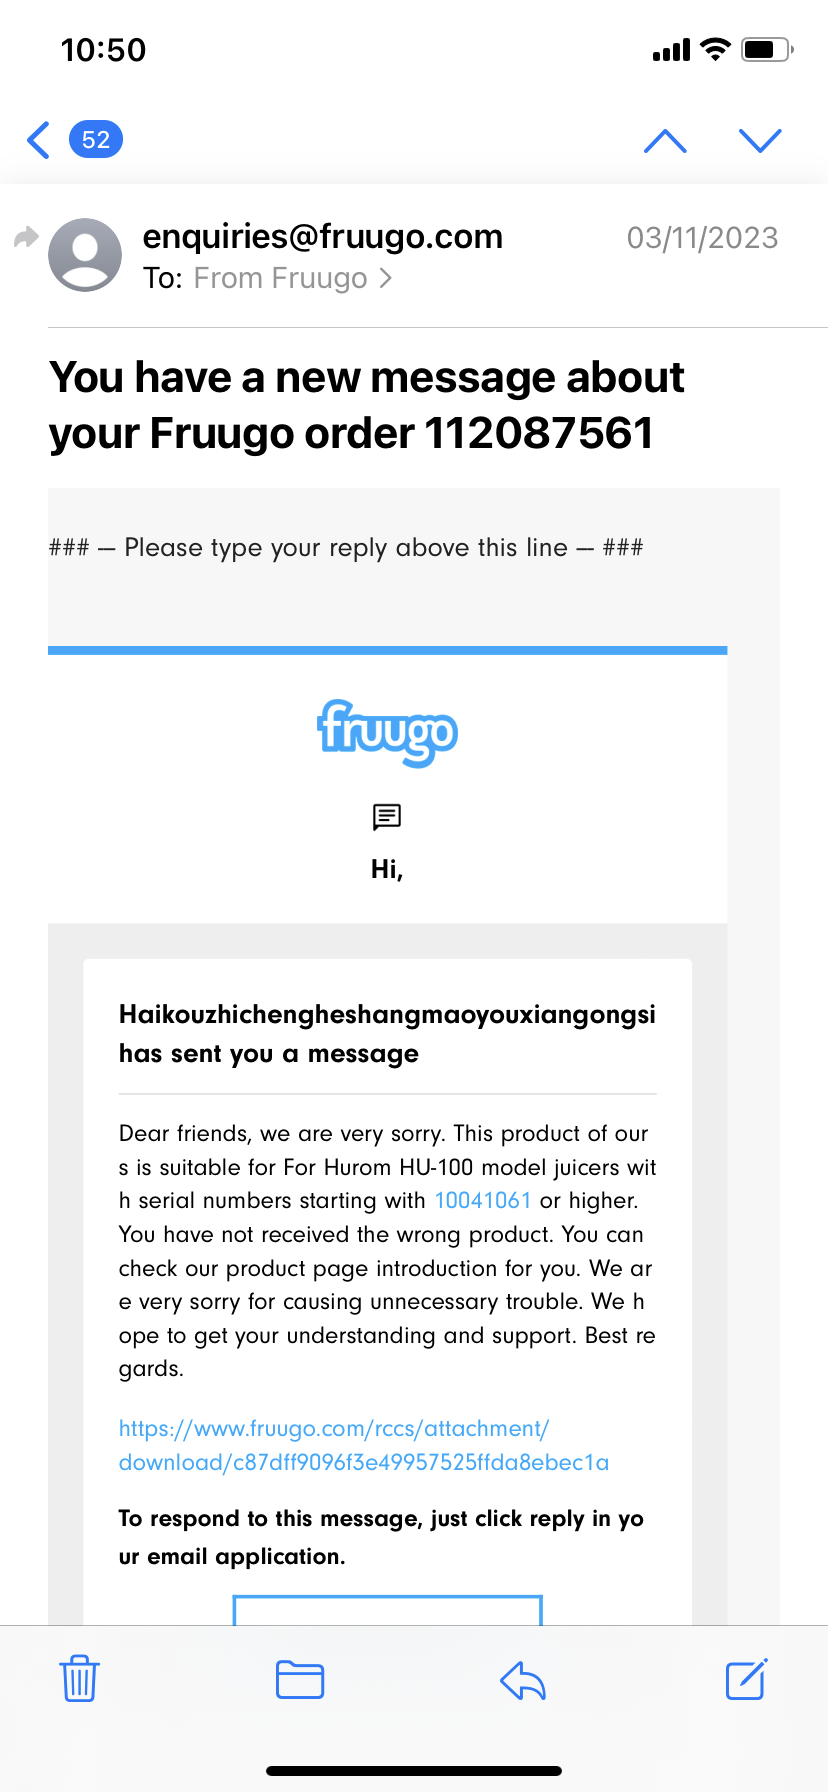 Fruugo.com Reviews - Read 1,162 Genuine Customer Reviews